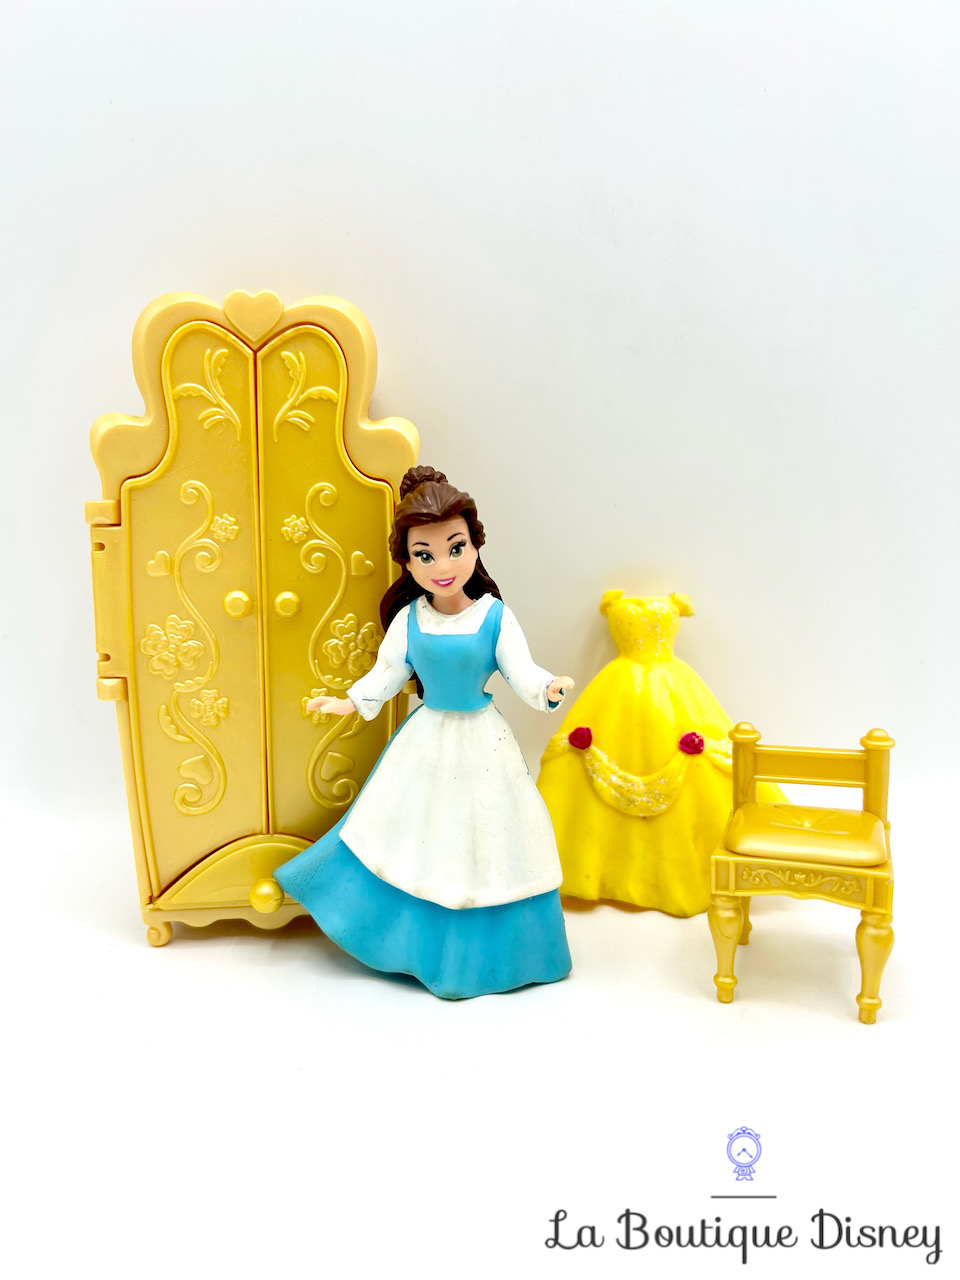 Figurine Fashion Polly Pocket Belle La belle et la bête Favorite Moments Disney Princess Mattel 2009 Mini Poupée